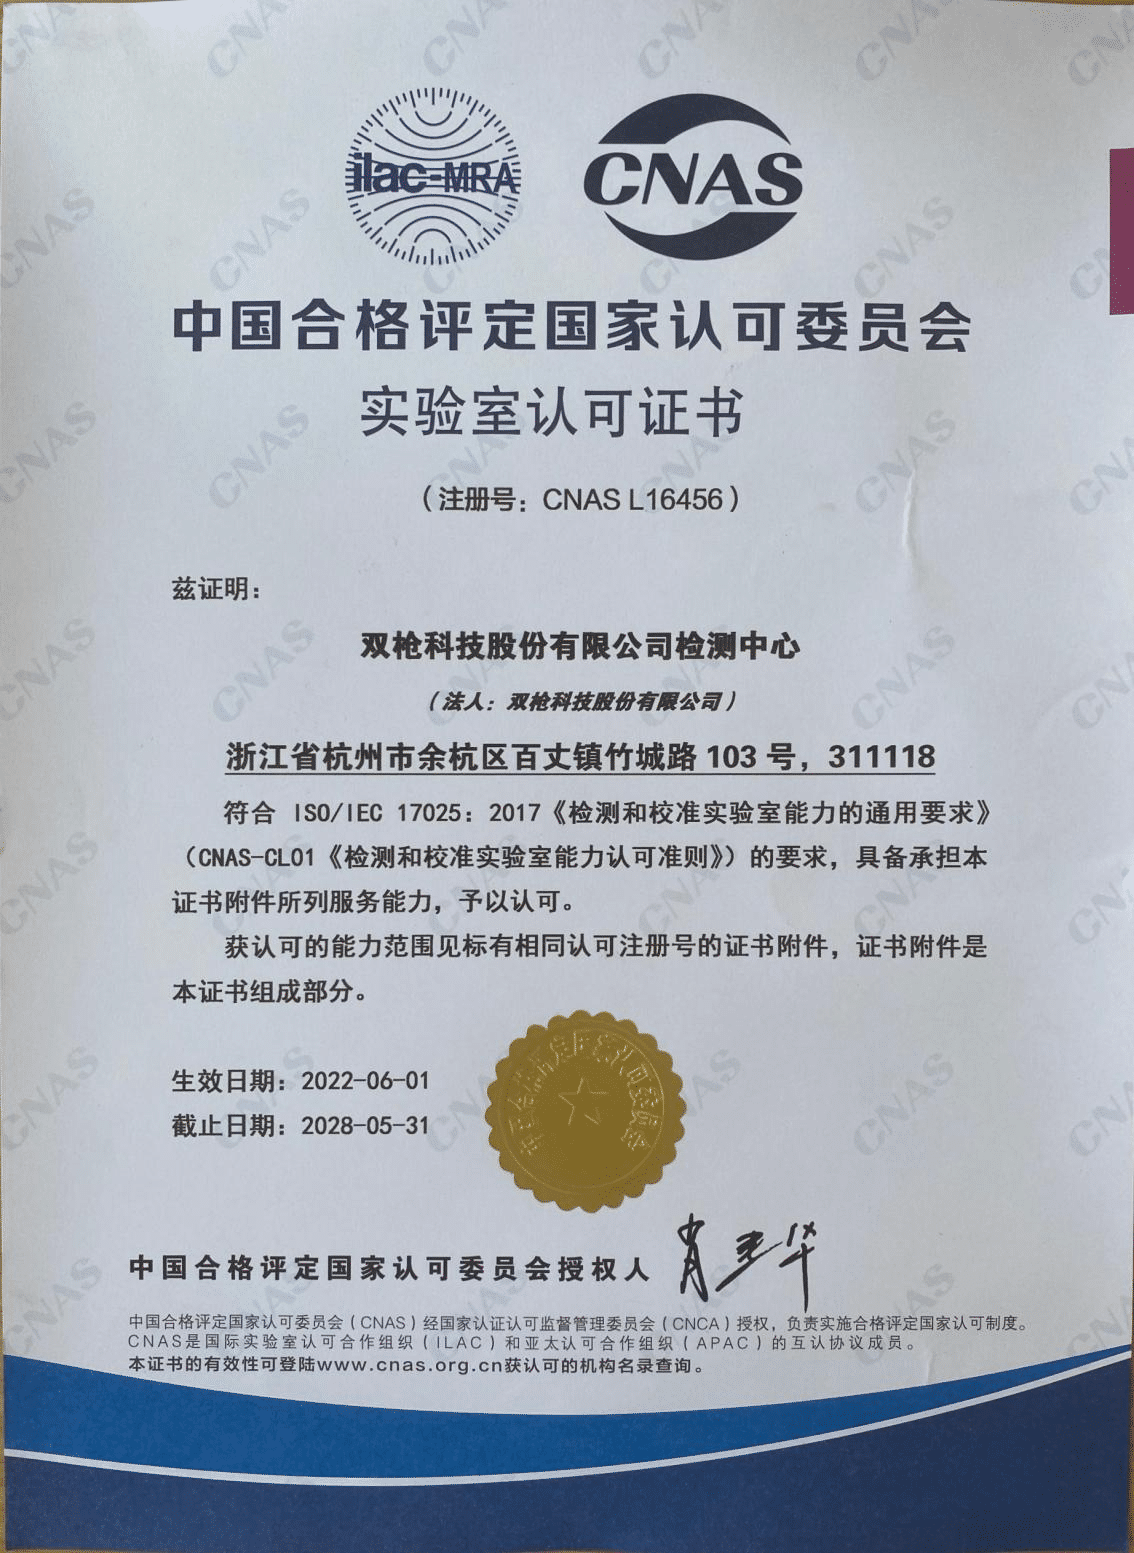 Pusat Ujian Suncha telah dianugerahkan sijil CNAS (2)